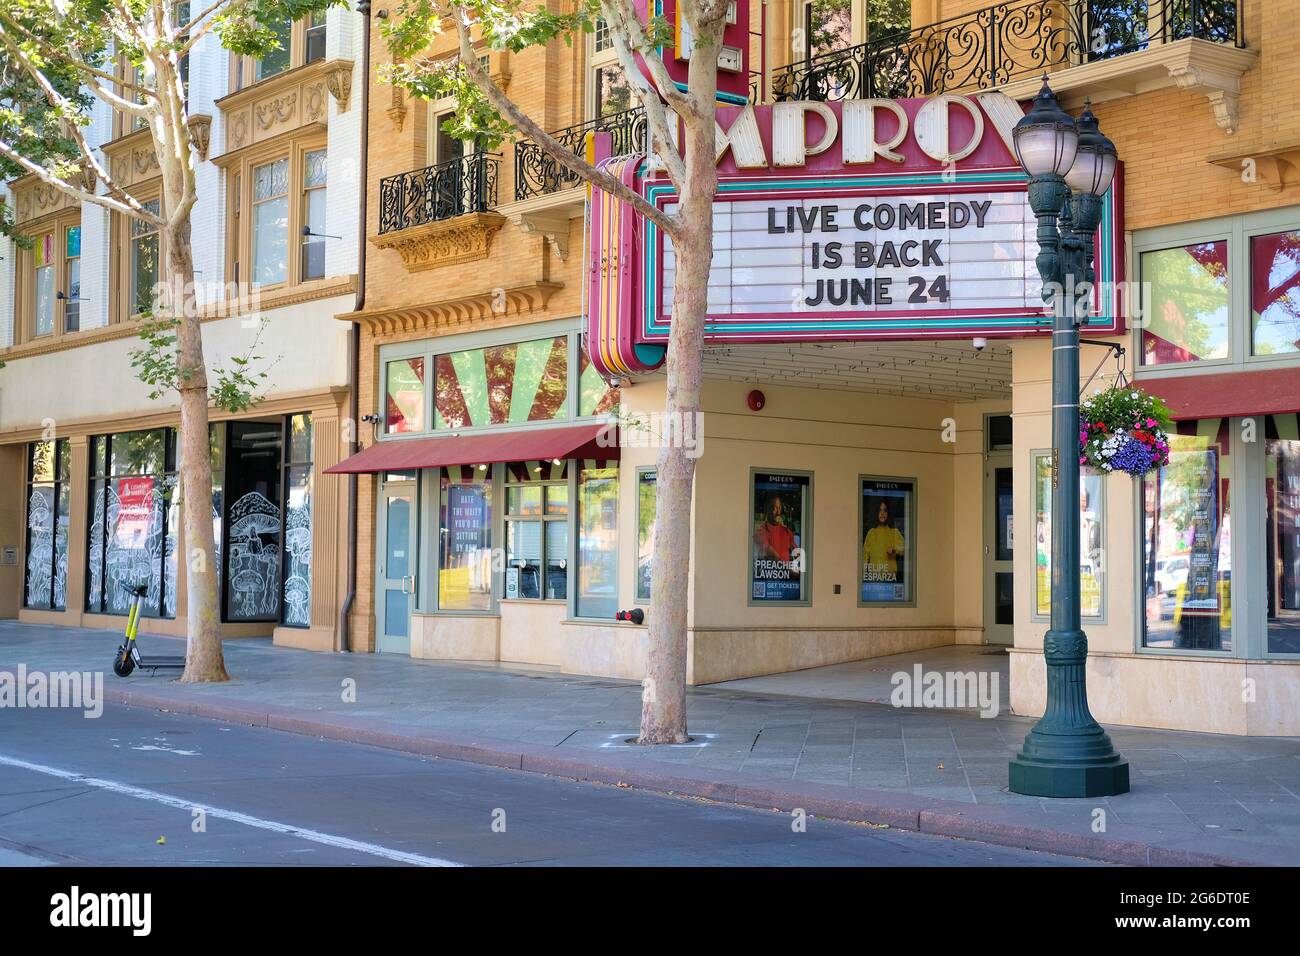 Das Festzelt des San Jose Improv Comedy Club in der Innenstadt von San Jose, Kalifornien, kündigt seine Wiedereröffnung nach der Schließung von Schutzheimpandemie Covid-19 an. Stockfoto